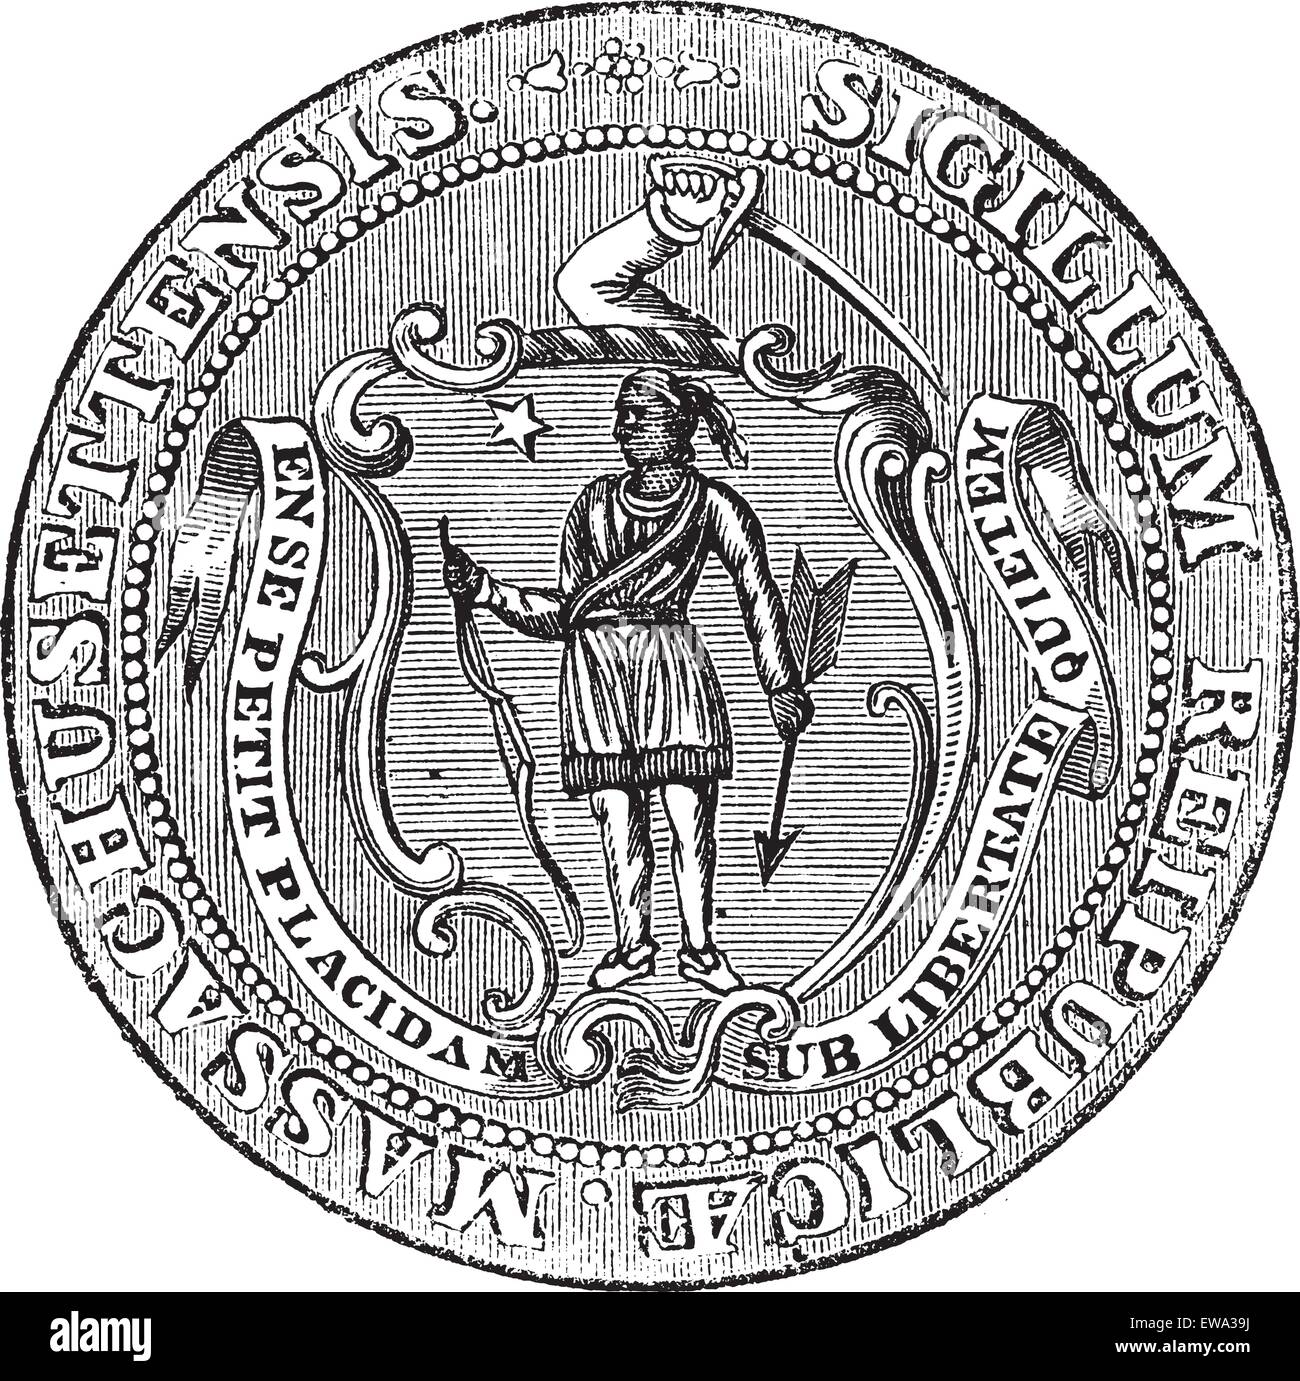 Grand sceau du Commonwealth du Massachusetts ou le sceau de la République de Californie, États-Unis, gravure d'époque. Illustration de Vecteur